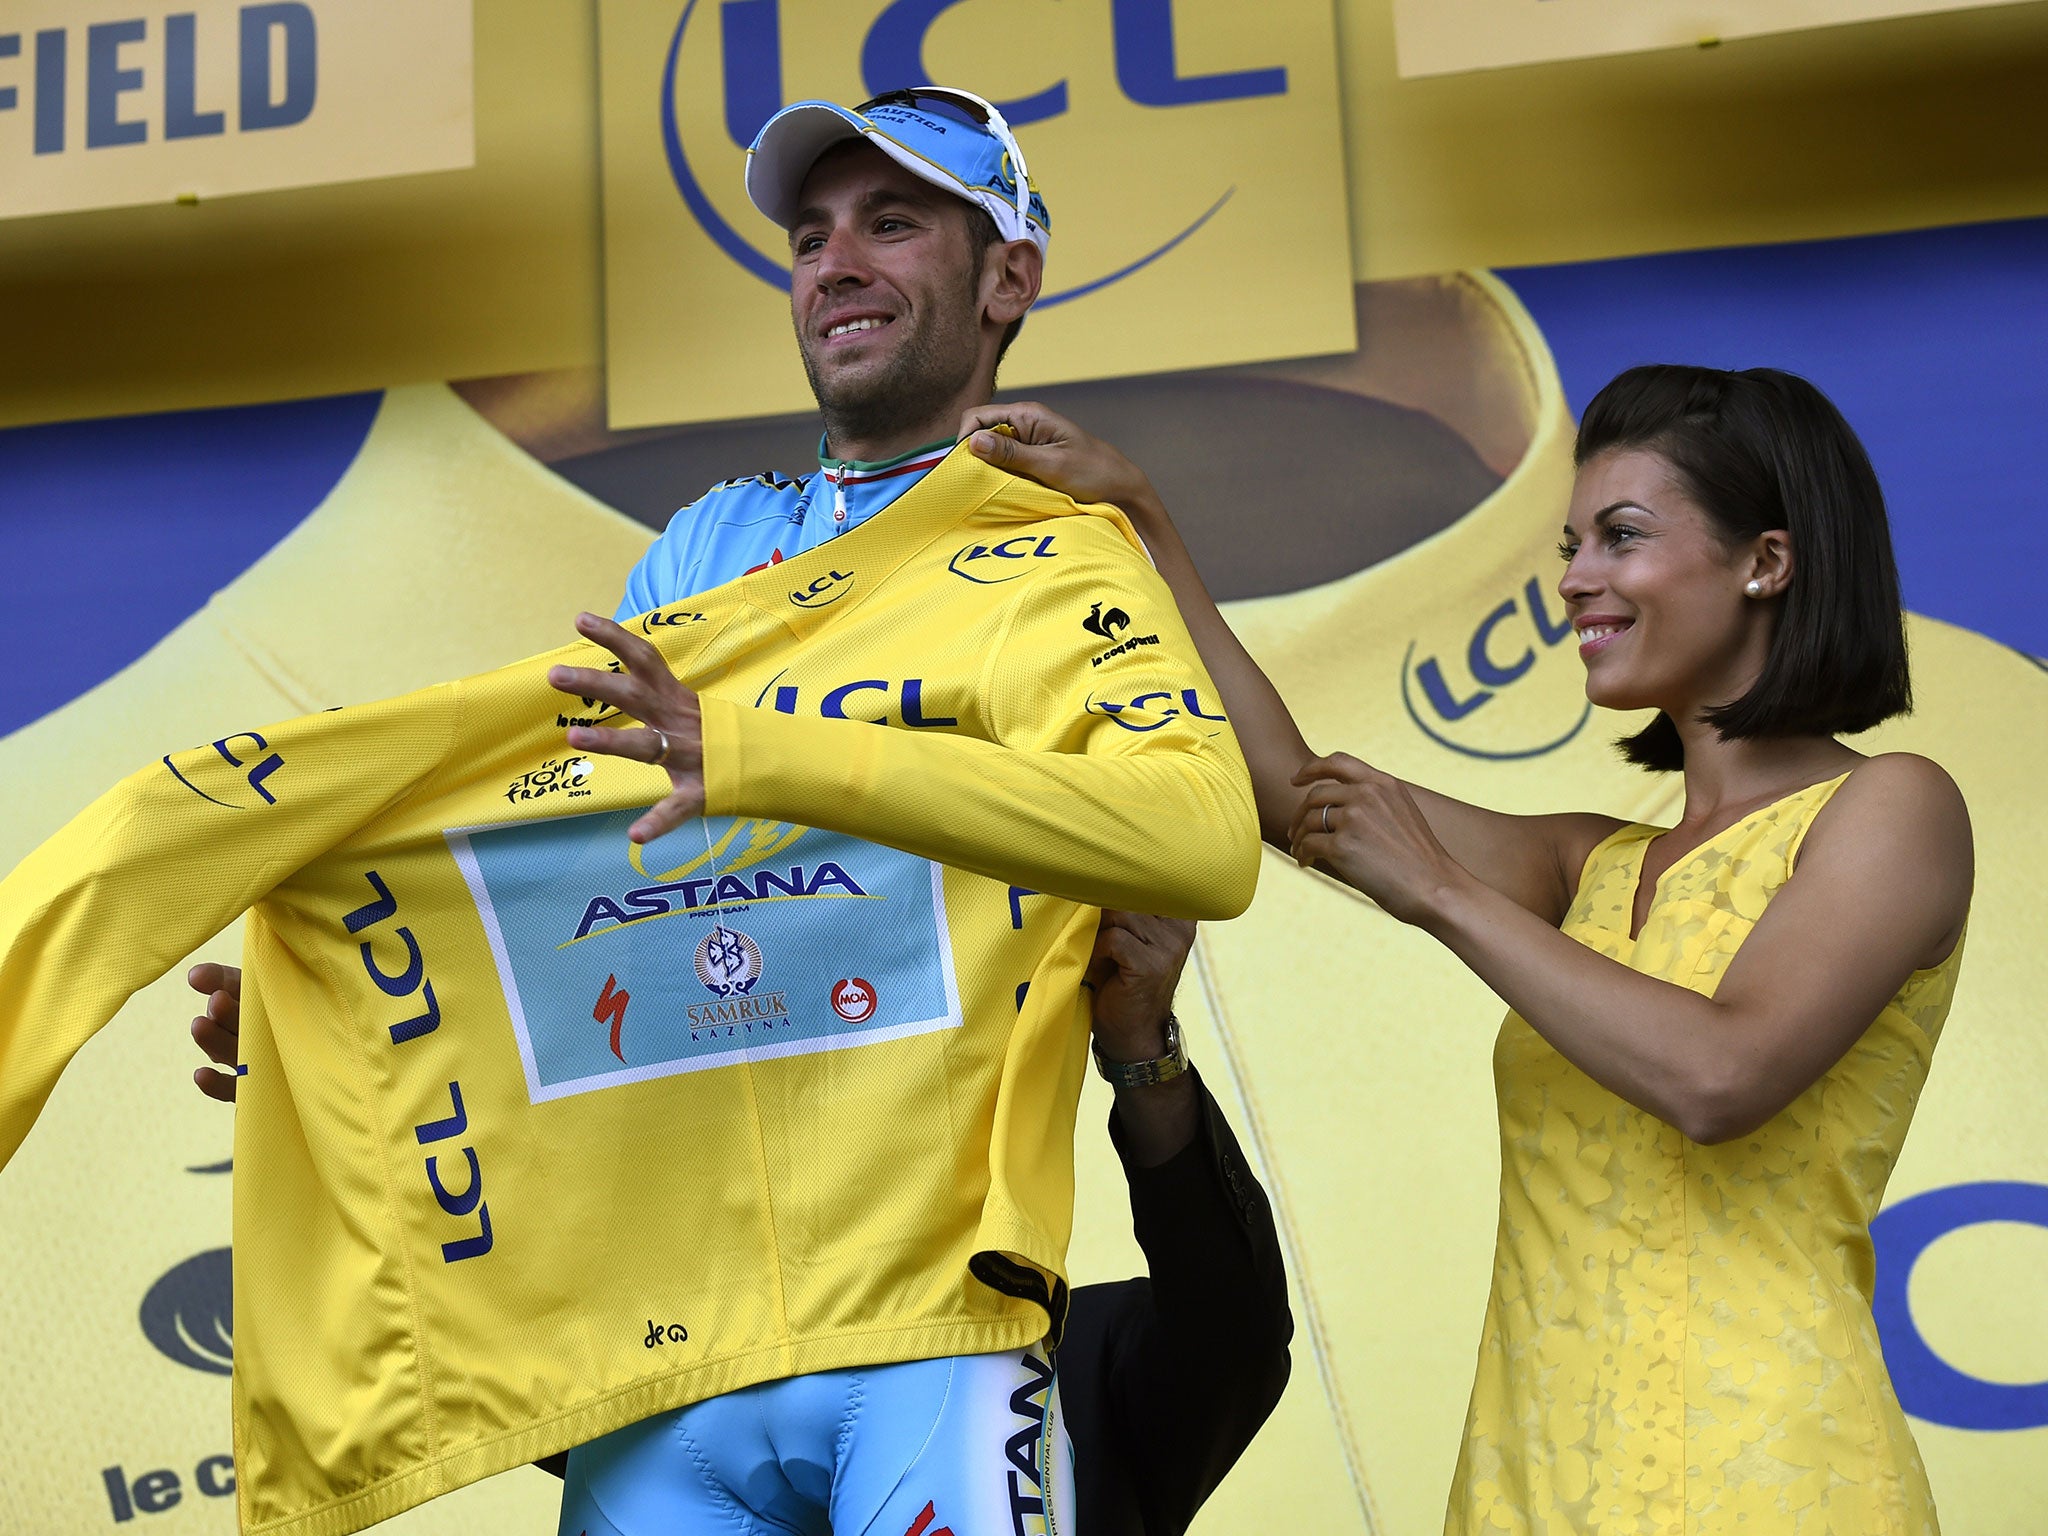 Vincenzo Nibali and the podium girl